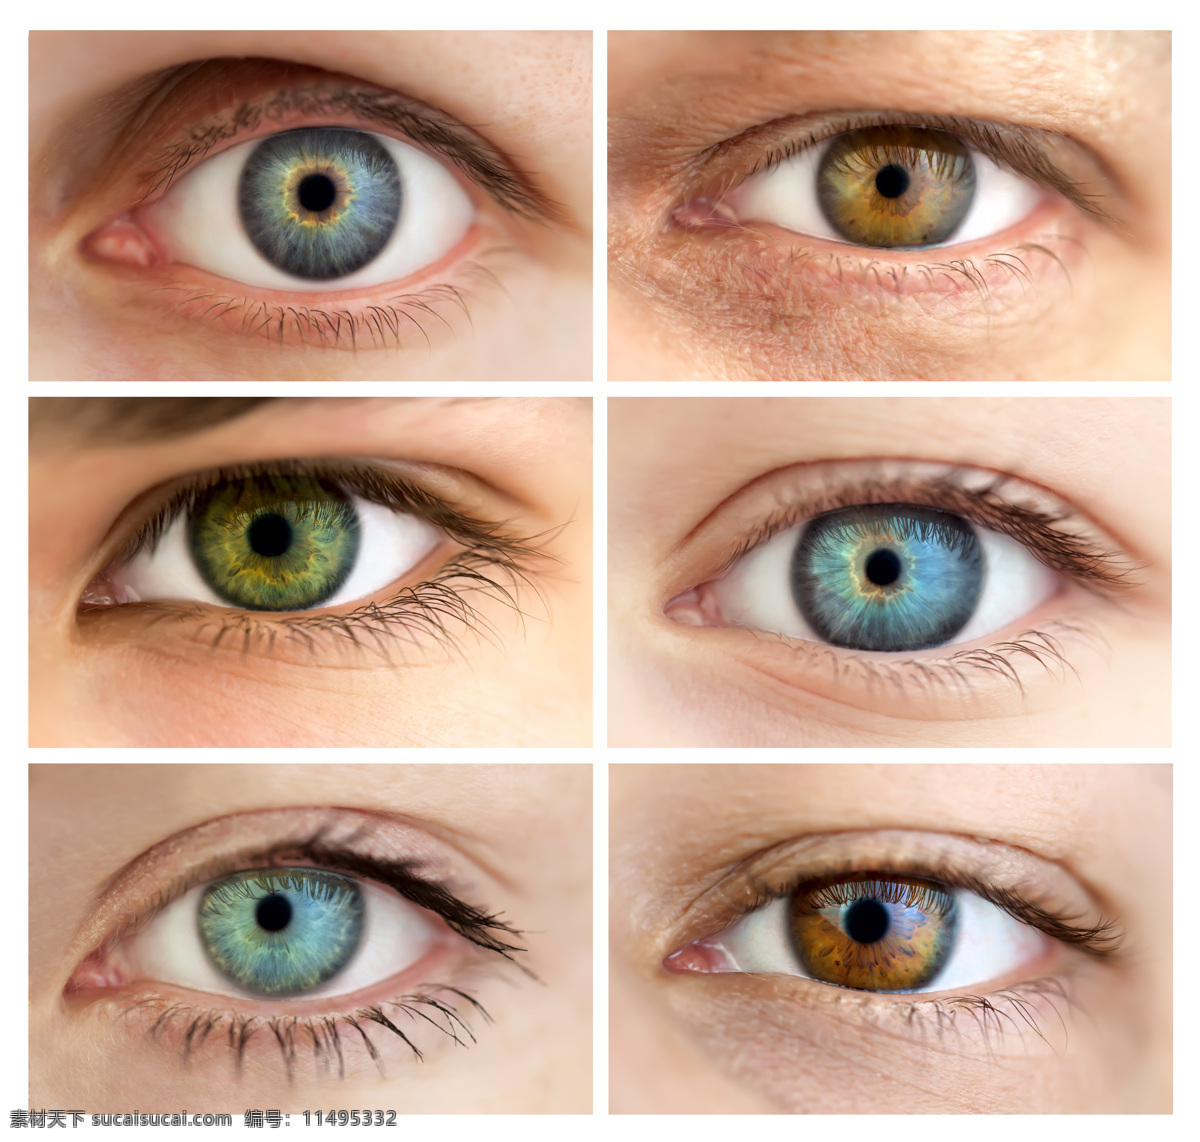 外国 女性 眼睛 眼睛特写 瞳孔 眼珠 眼球 女性眼睛 人体器官图 人物图片